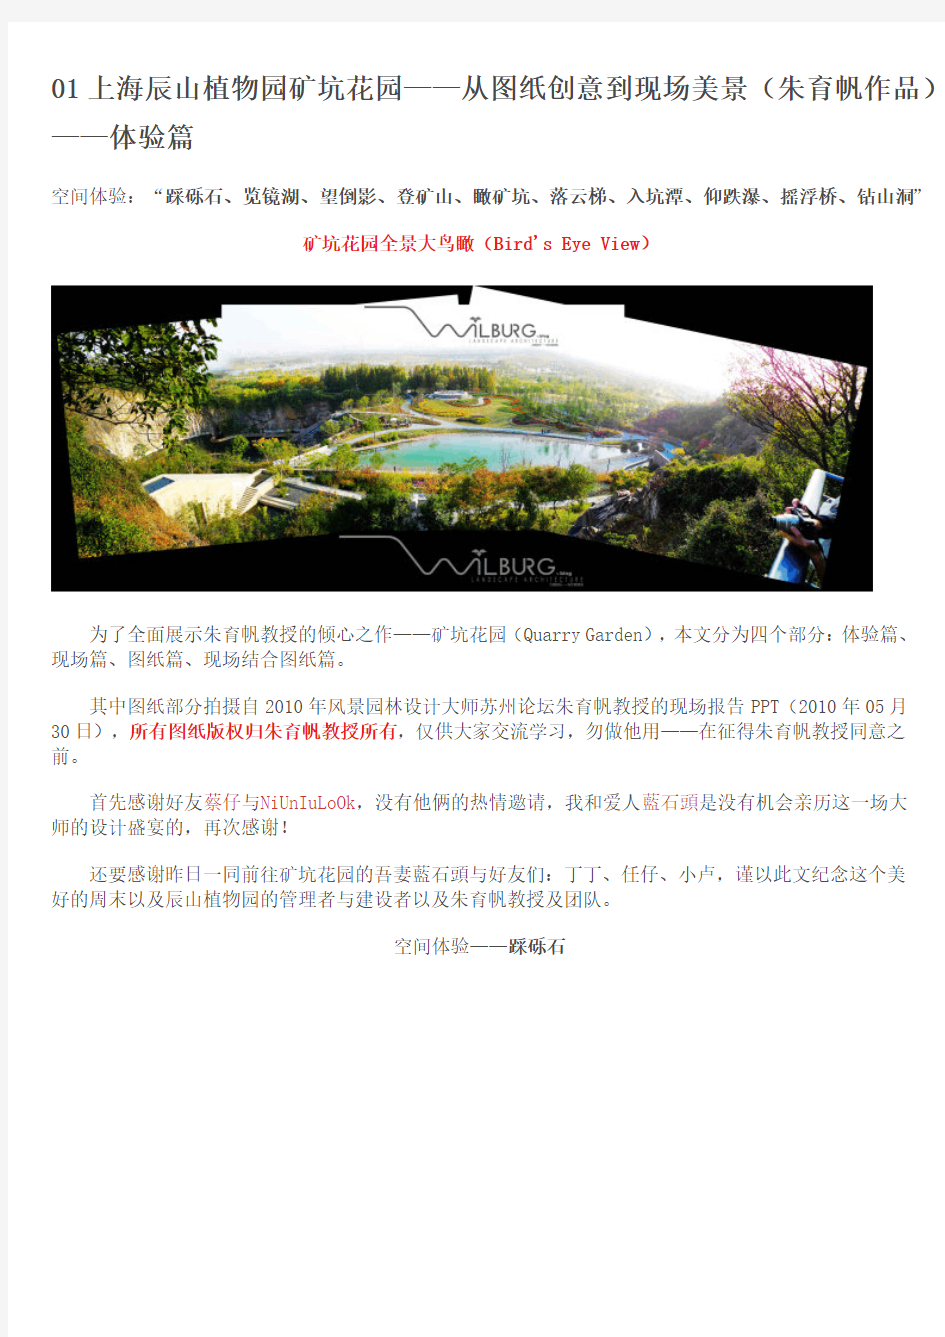 上海辰山植物园矿坑花园实景解析